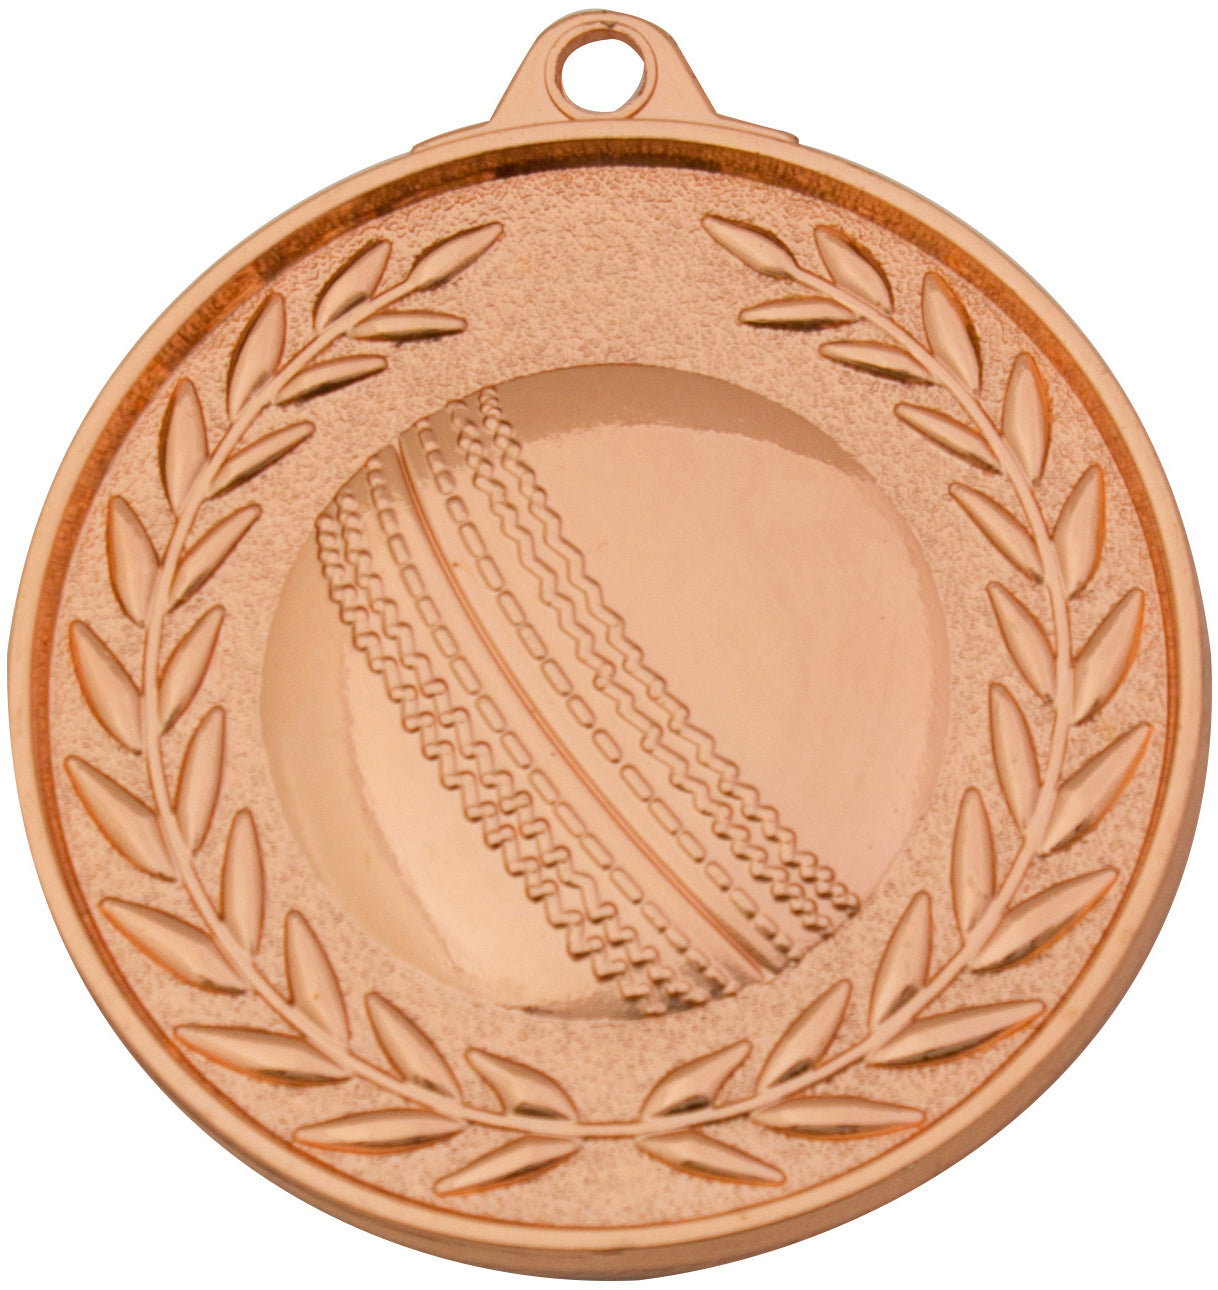 MX910 Cricket Medal